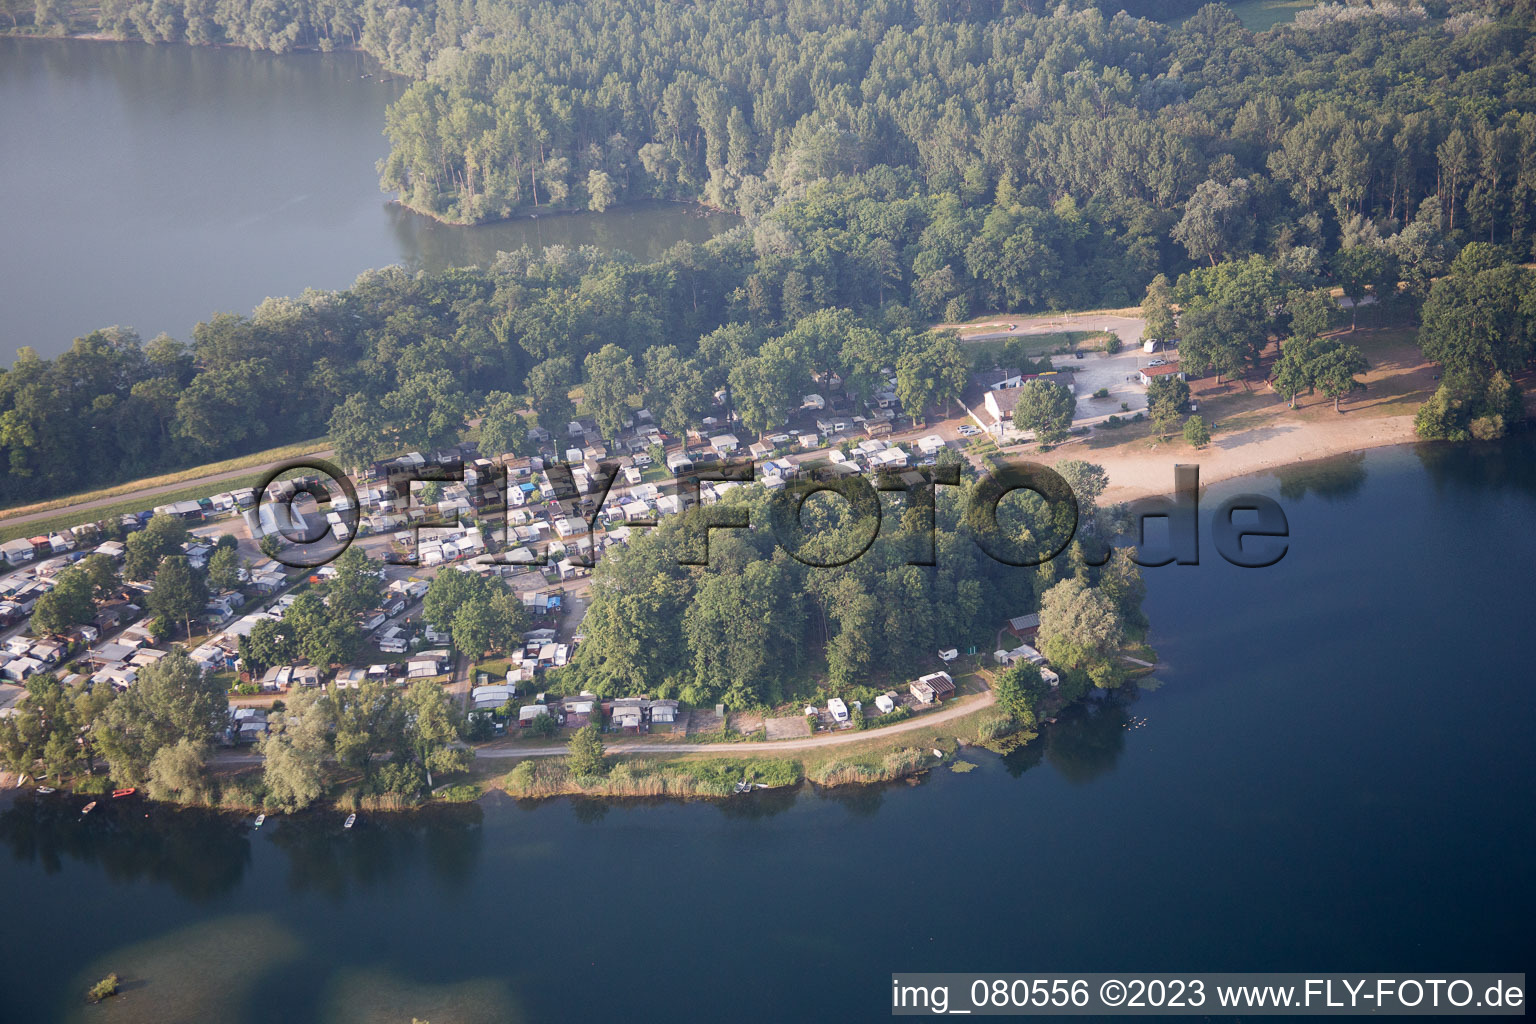 Luftbild von Campingplatz Lingenfeld im Bundesland Rheinland-Pfalz, Deutschland